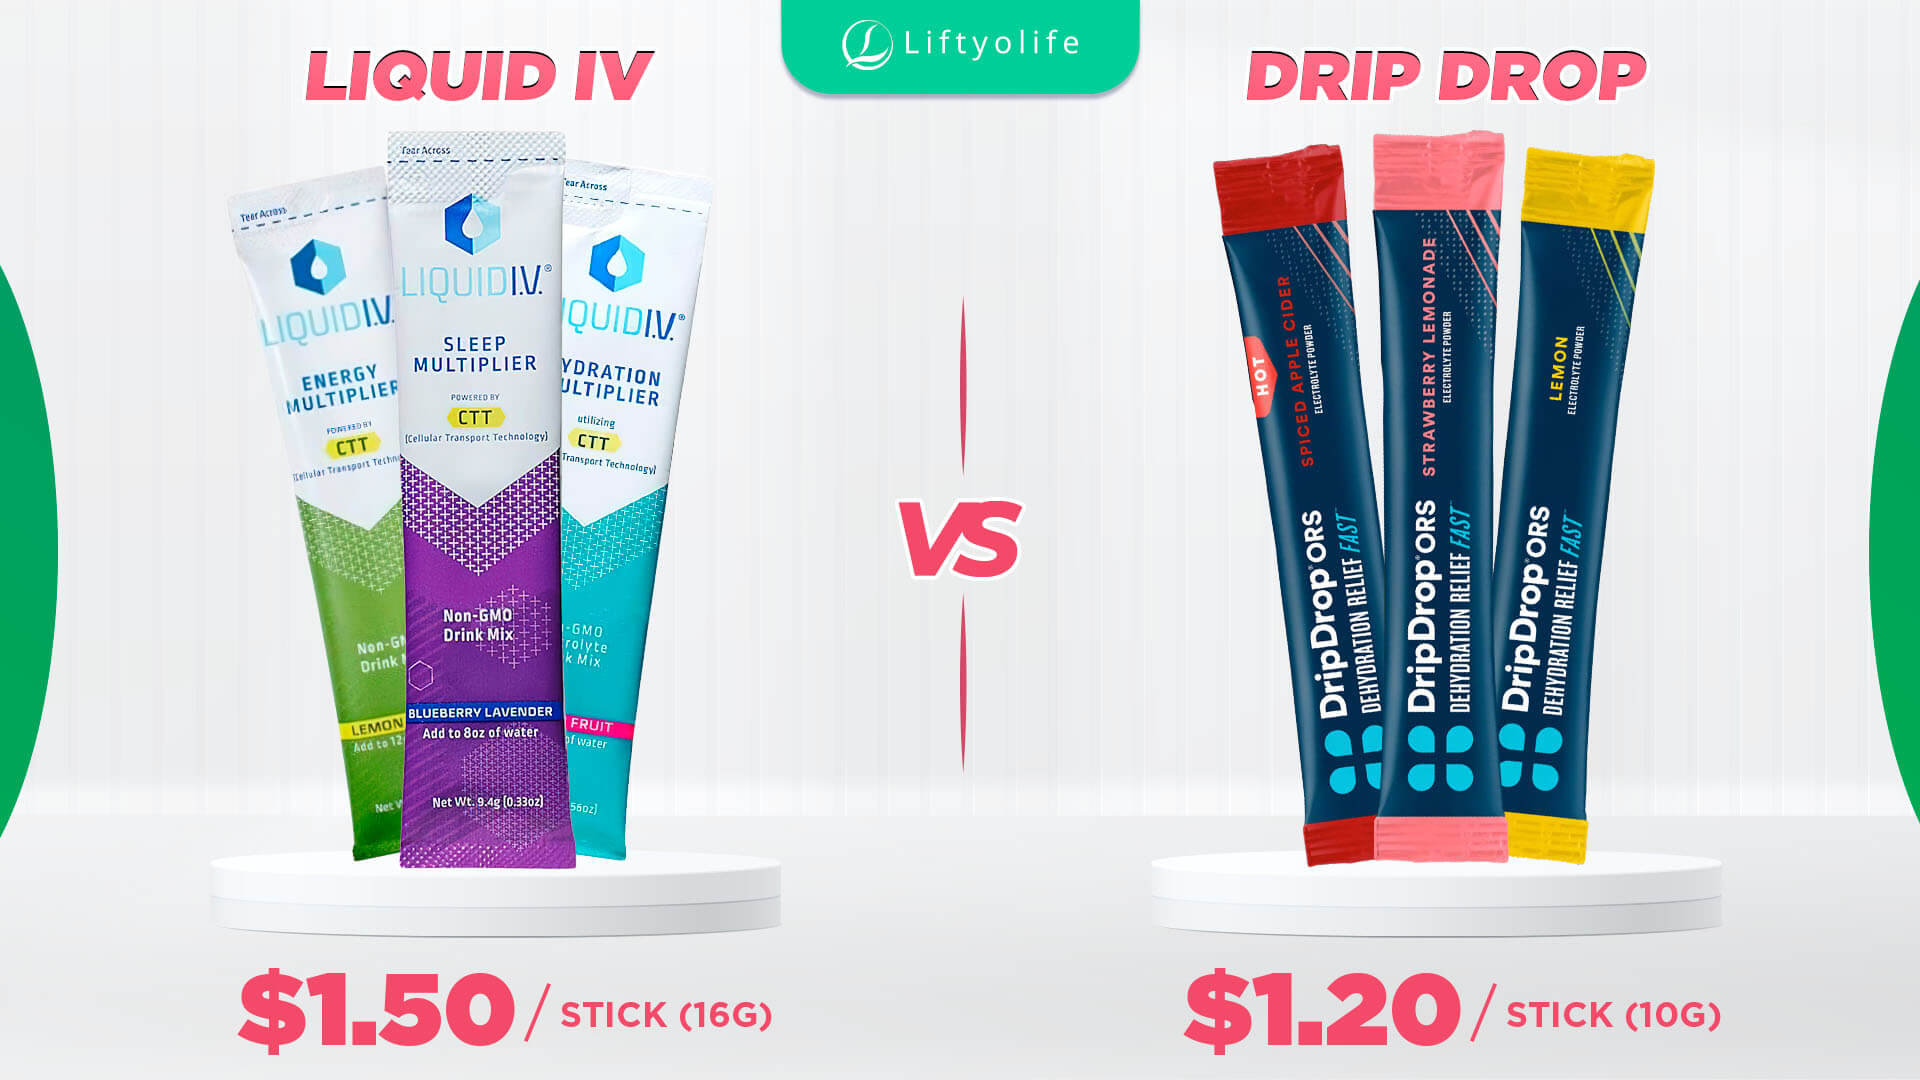 Liquid IV Vs Drip Drop: Price And Value